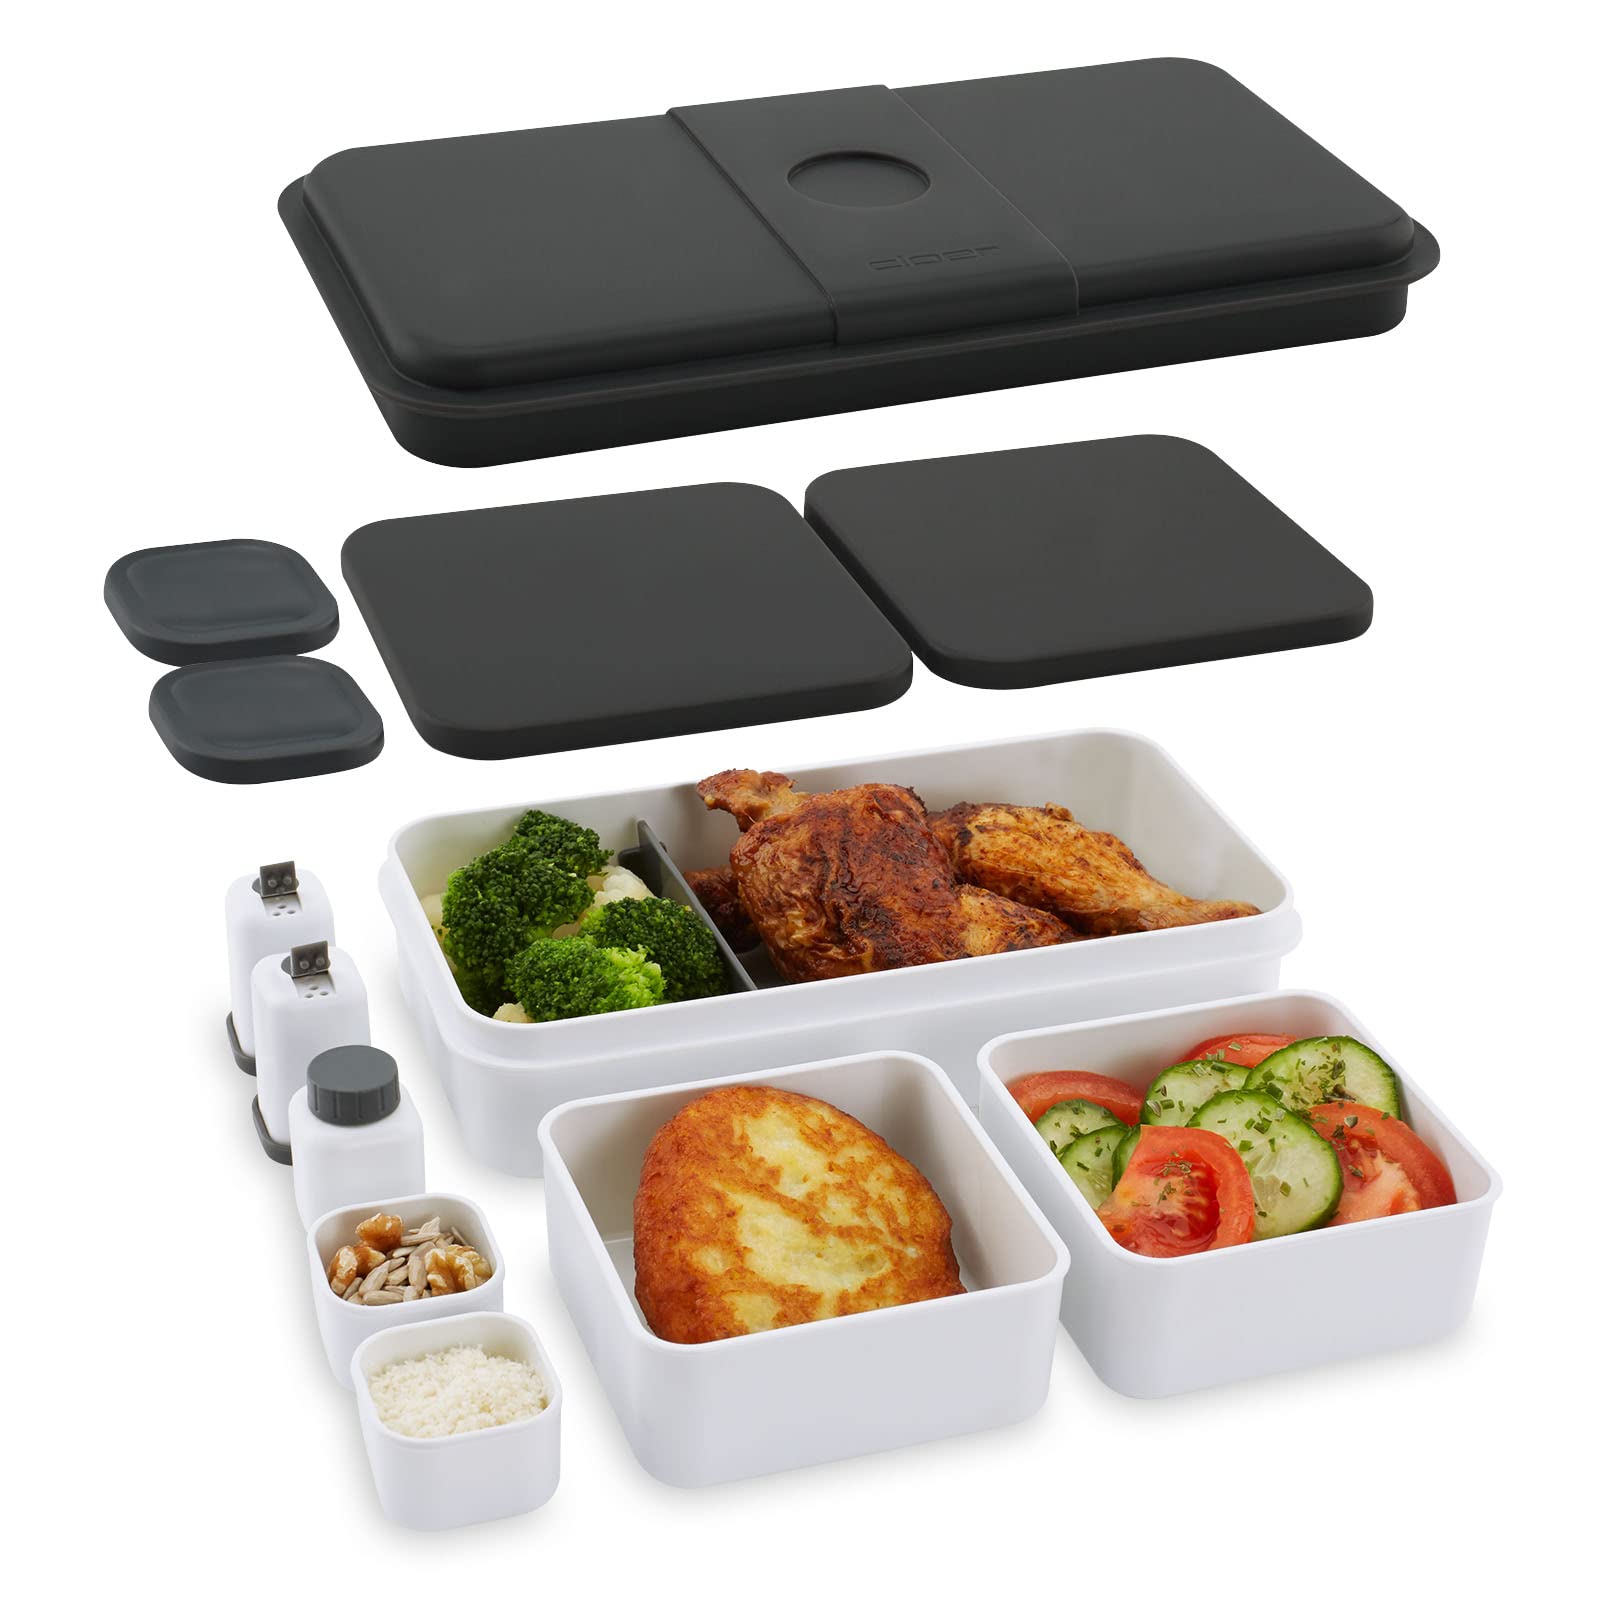 Cloer 800S2-1 Lunch Care System - Bento Box 15-teilig, XXL- Format 2100ml, unterteilbar mit viel Zubehör, Lunchbox, Brotdose für Kinder und Erwachsene, Weiß